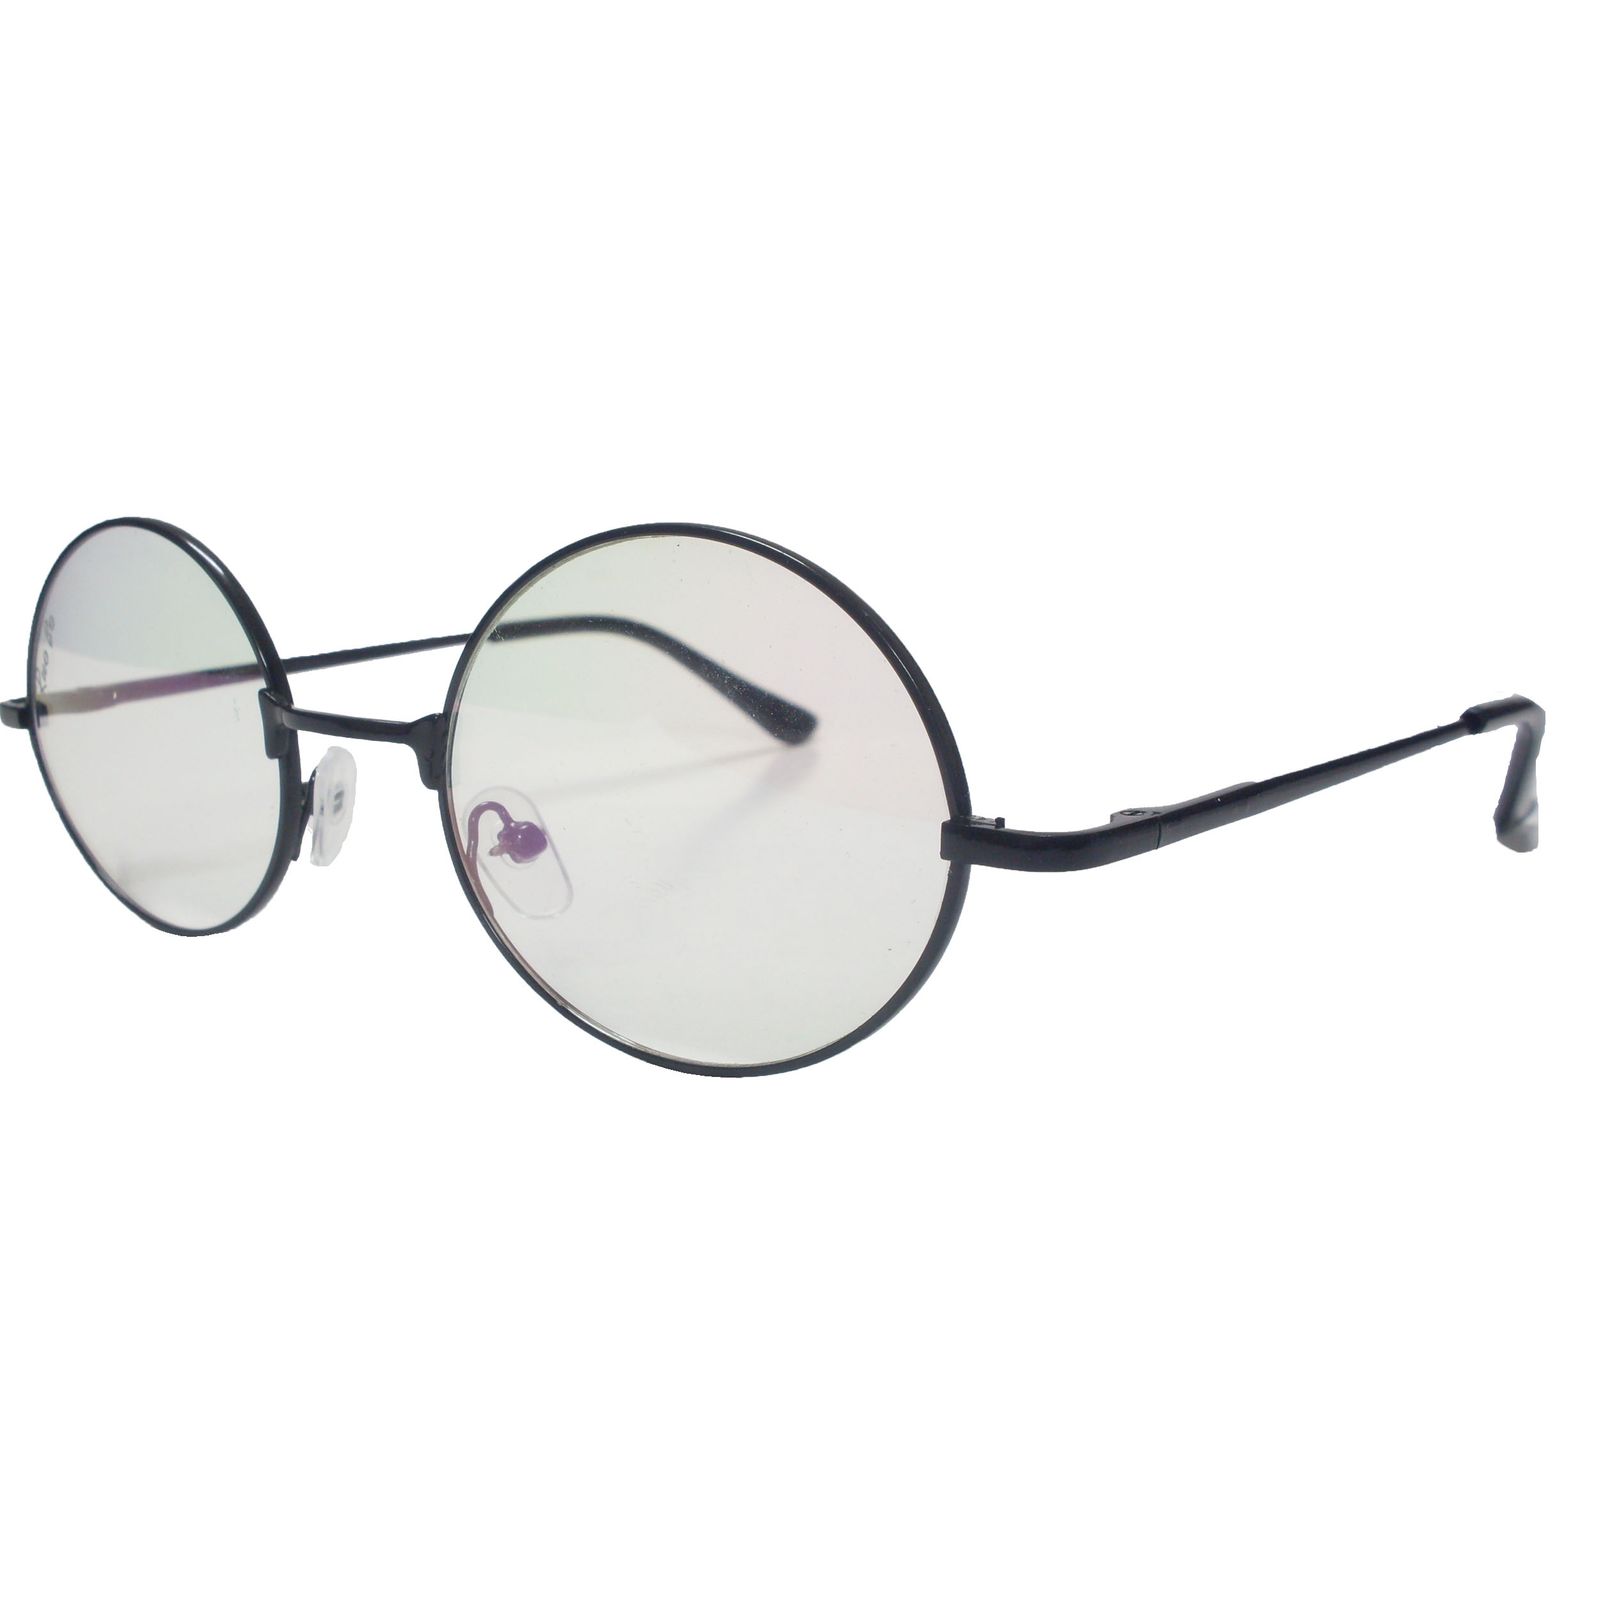 فریم عینک طبی مدل T 150032 -  - 2